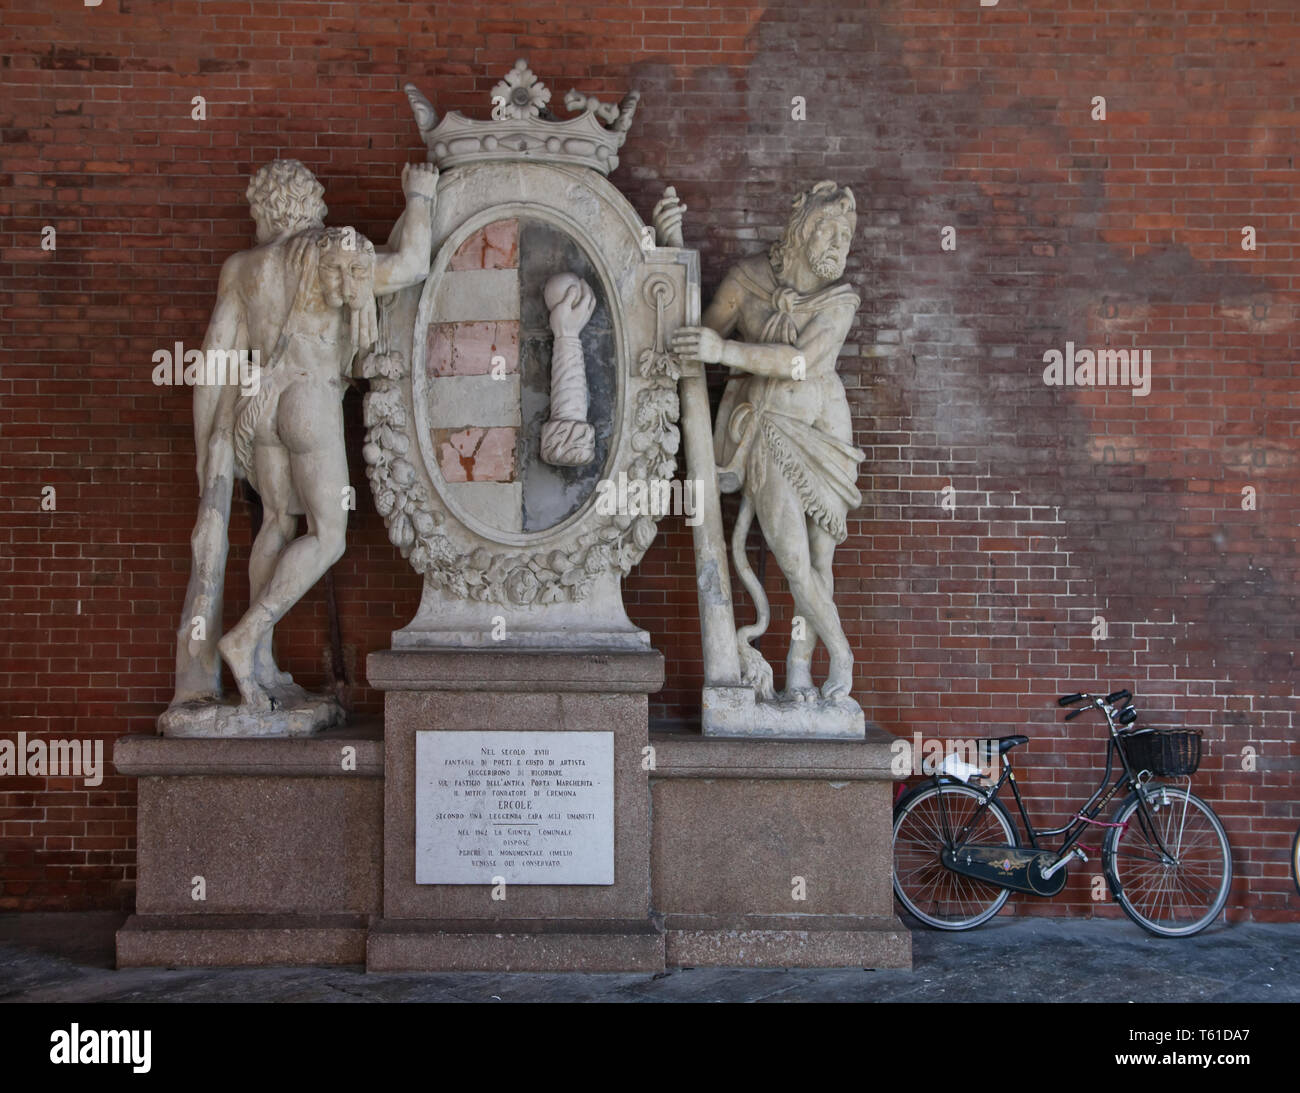 Cremona, portico della Loggia dei Militi: lo stemma comunale della città di Cremona, con figura di Ercole. A fianco, una bicicletta.  [ENG]   Cremona, Stock Photo